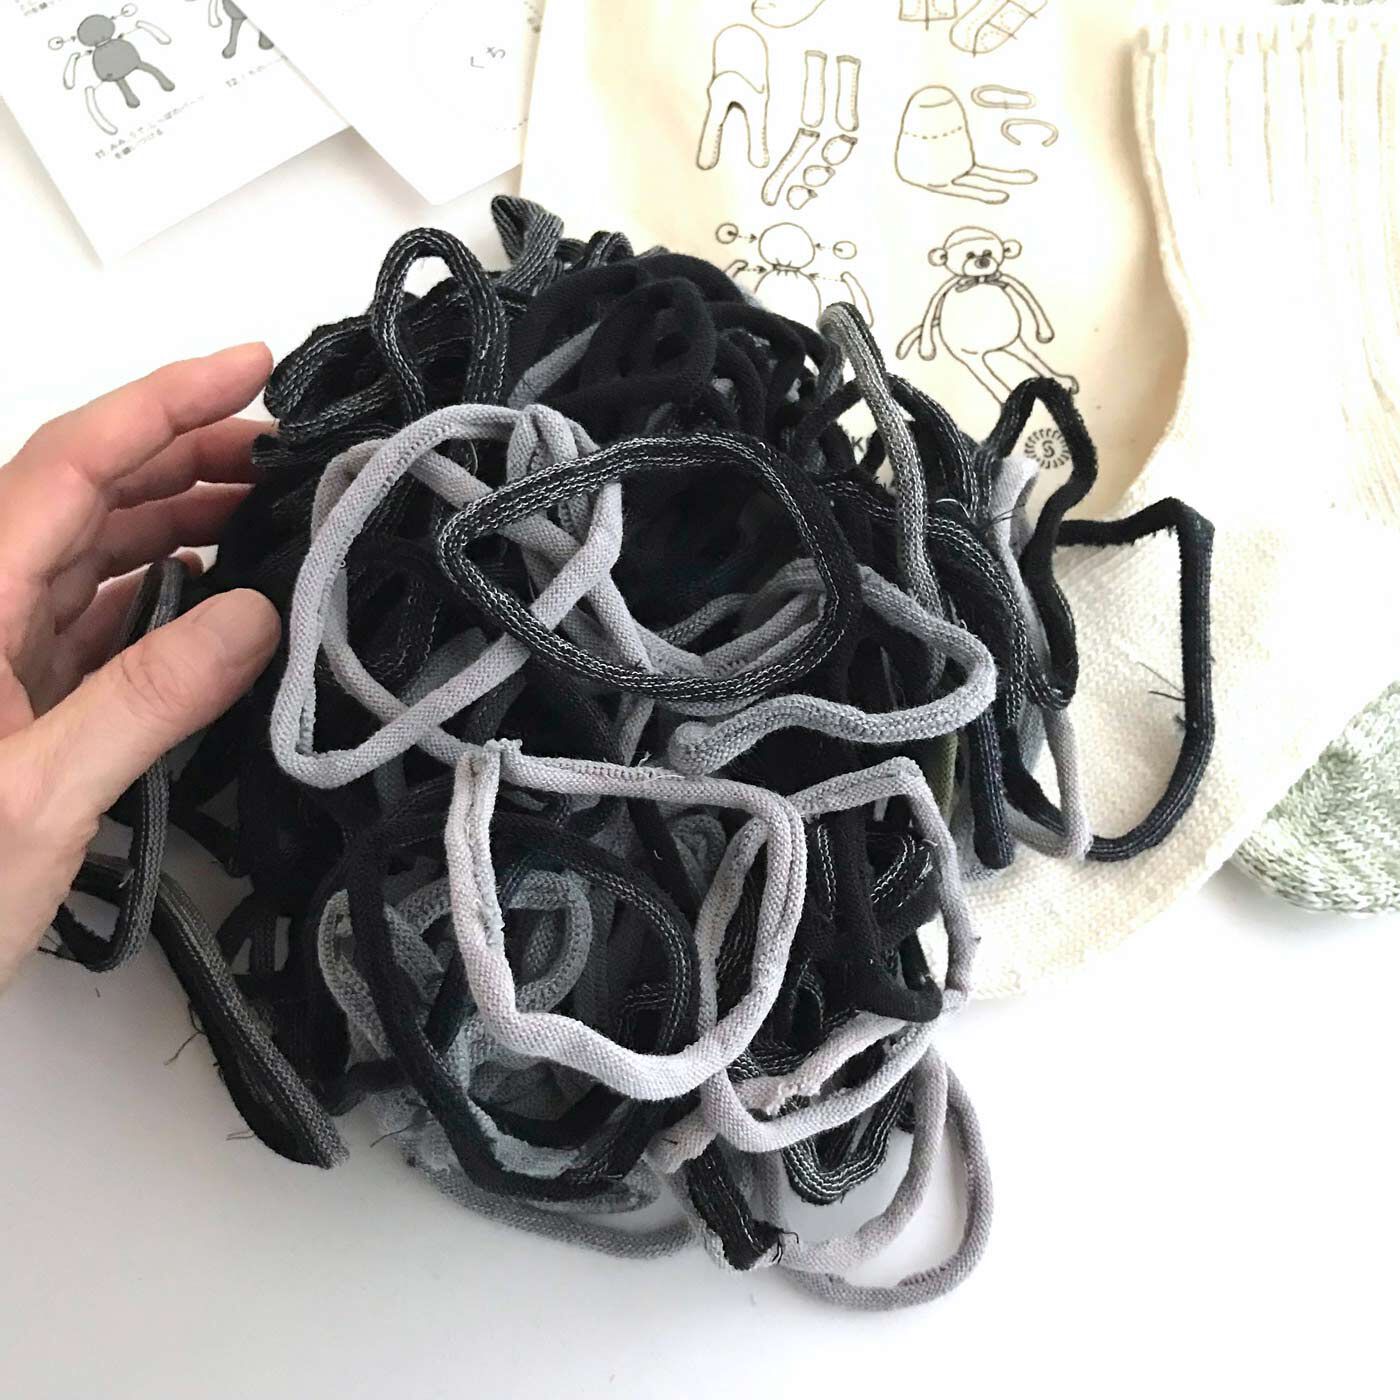 フェリシモの雑貨Kraso|残糸で編んだ靴下と端材で作るおさるのぬいぐるみキット〈巾着付き〉|この輪っかは、靴下のつま先を縫製する際に切り取られる端材。おもしろい！